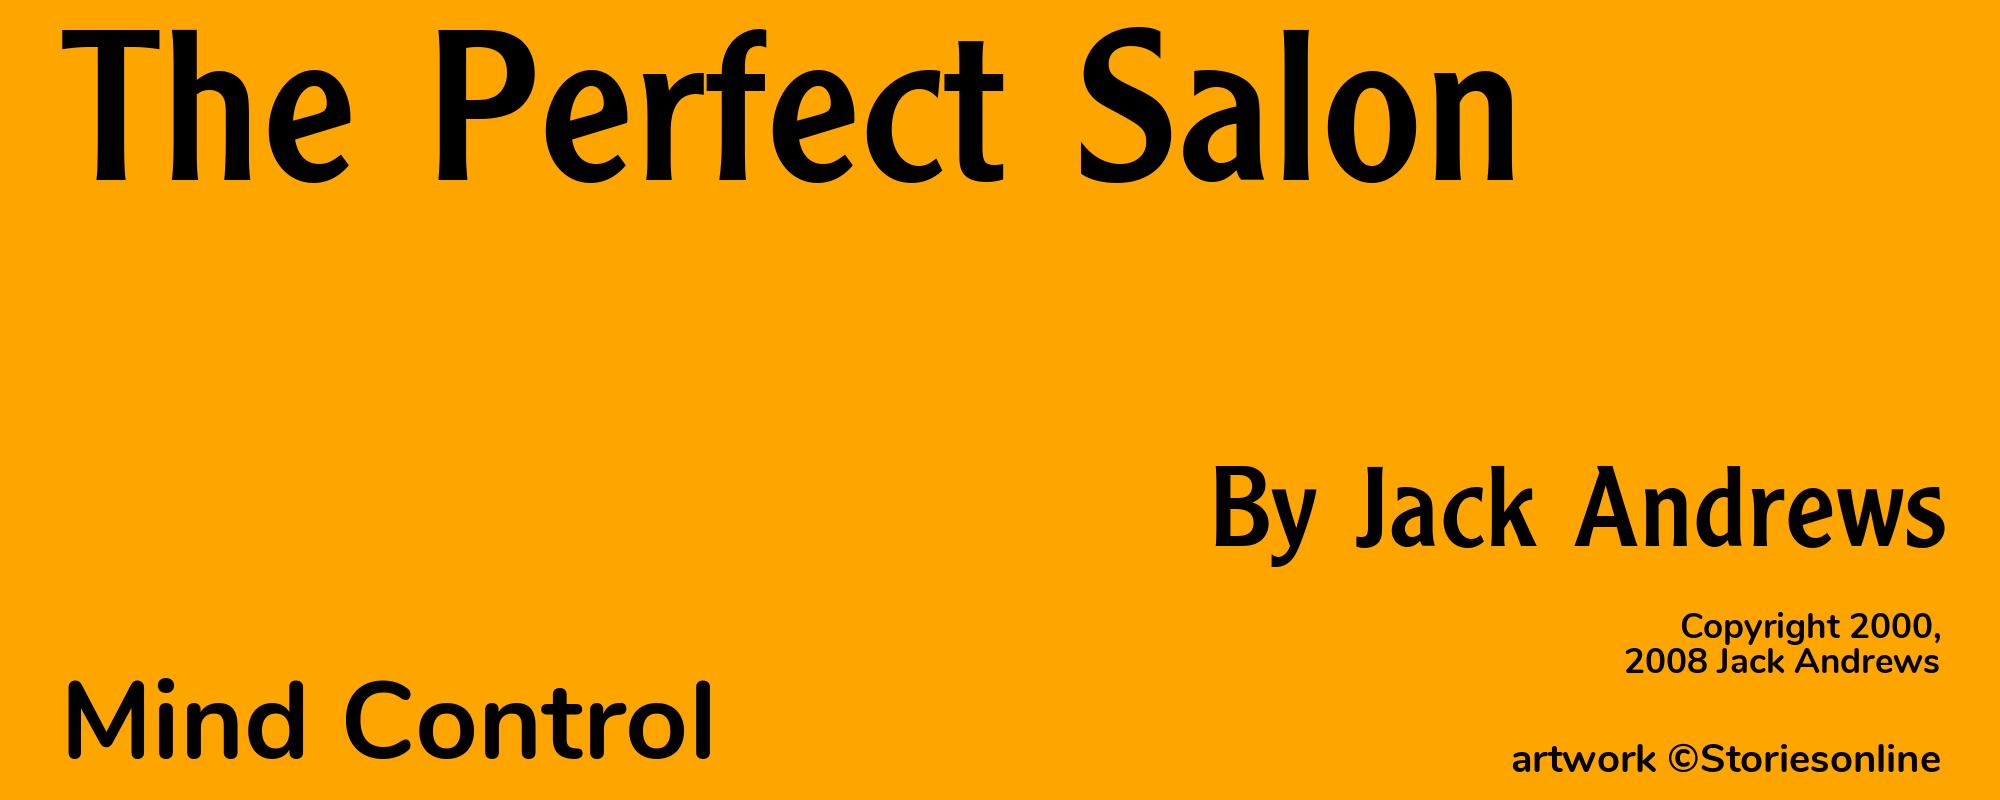 The Perfect Salon - Cover